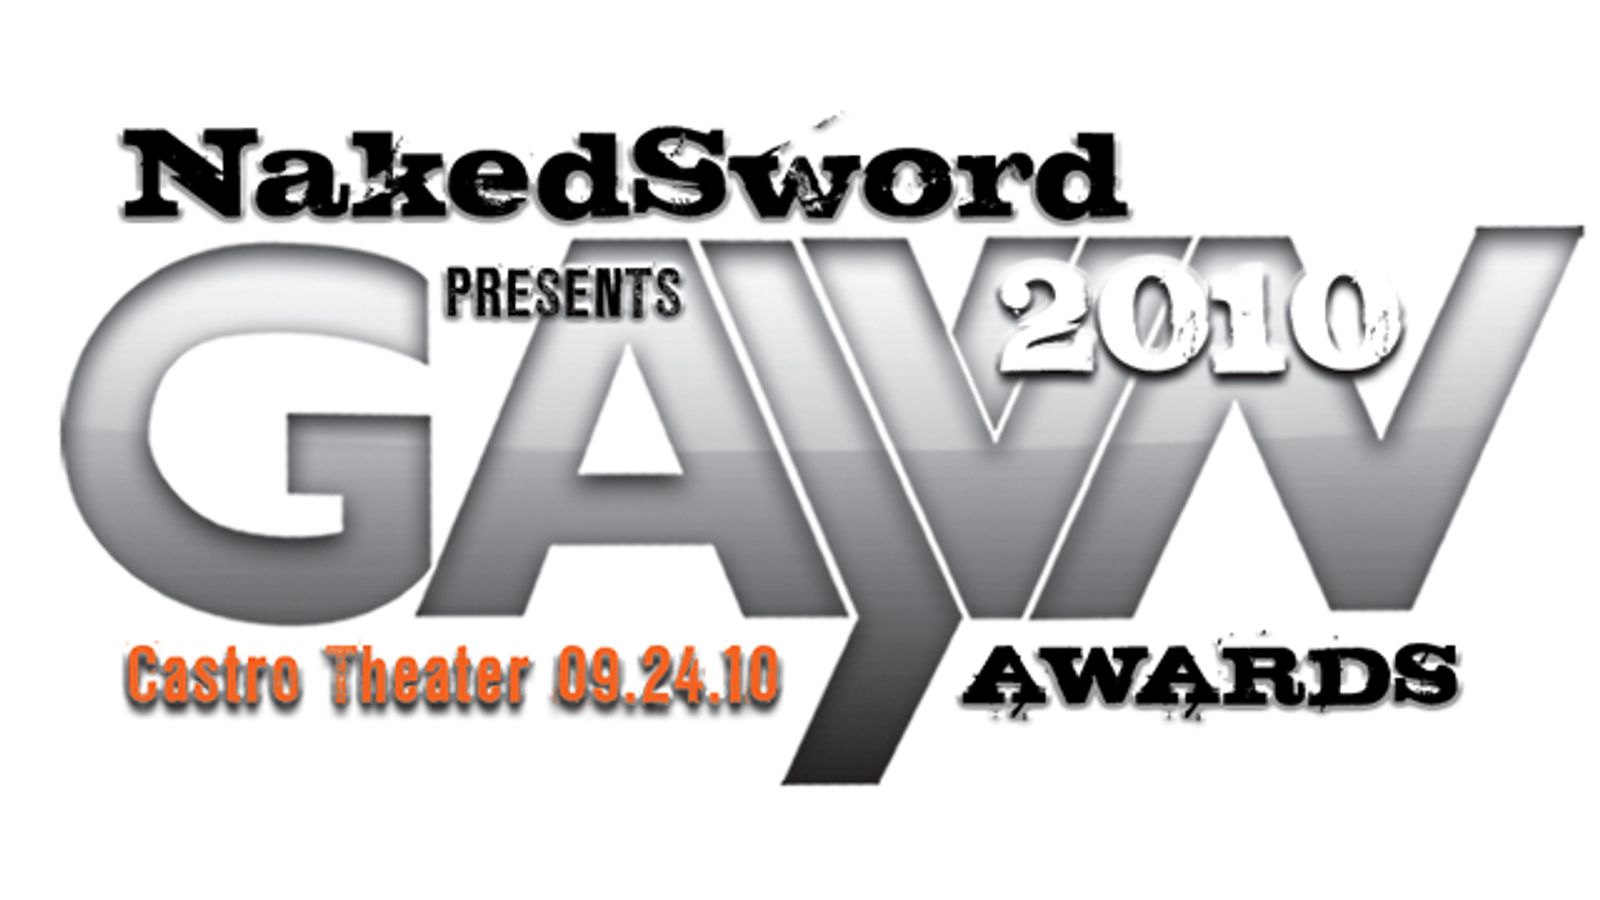 GAYVN Awards Return to the Castro